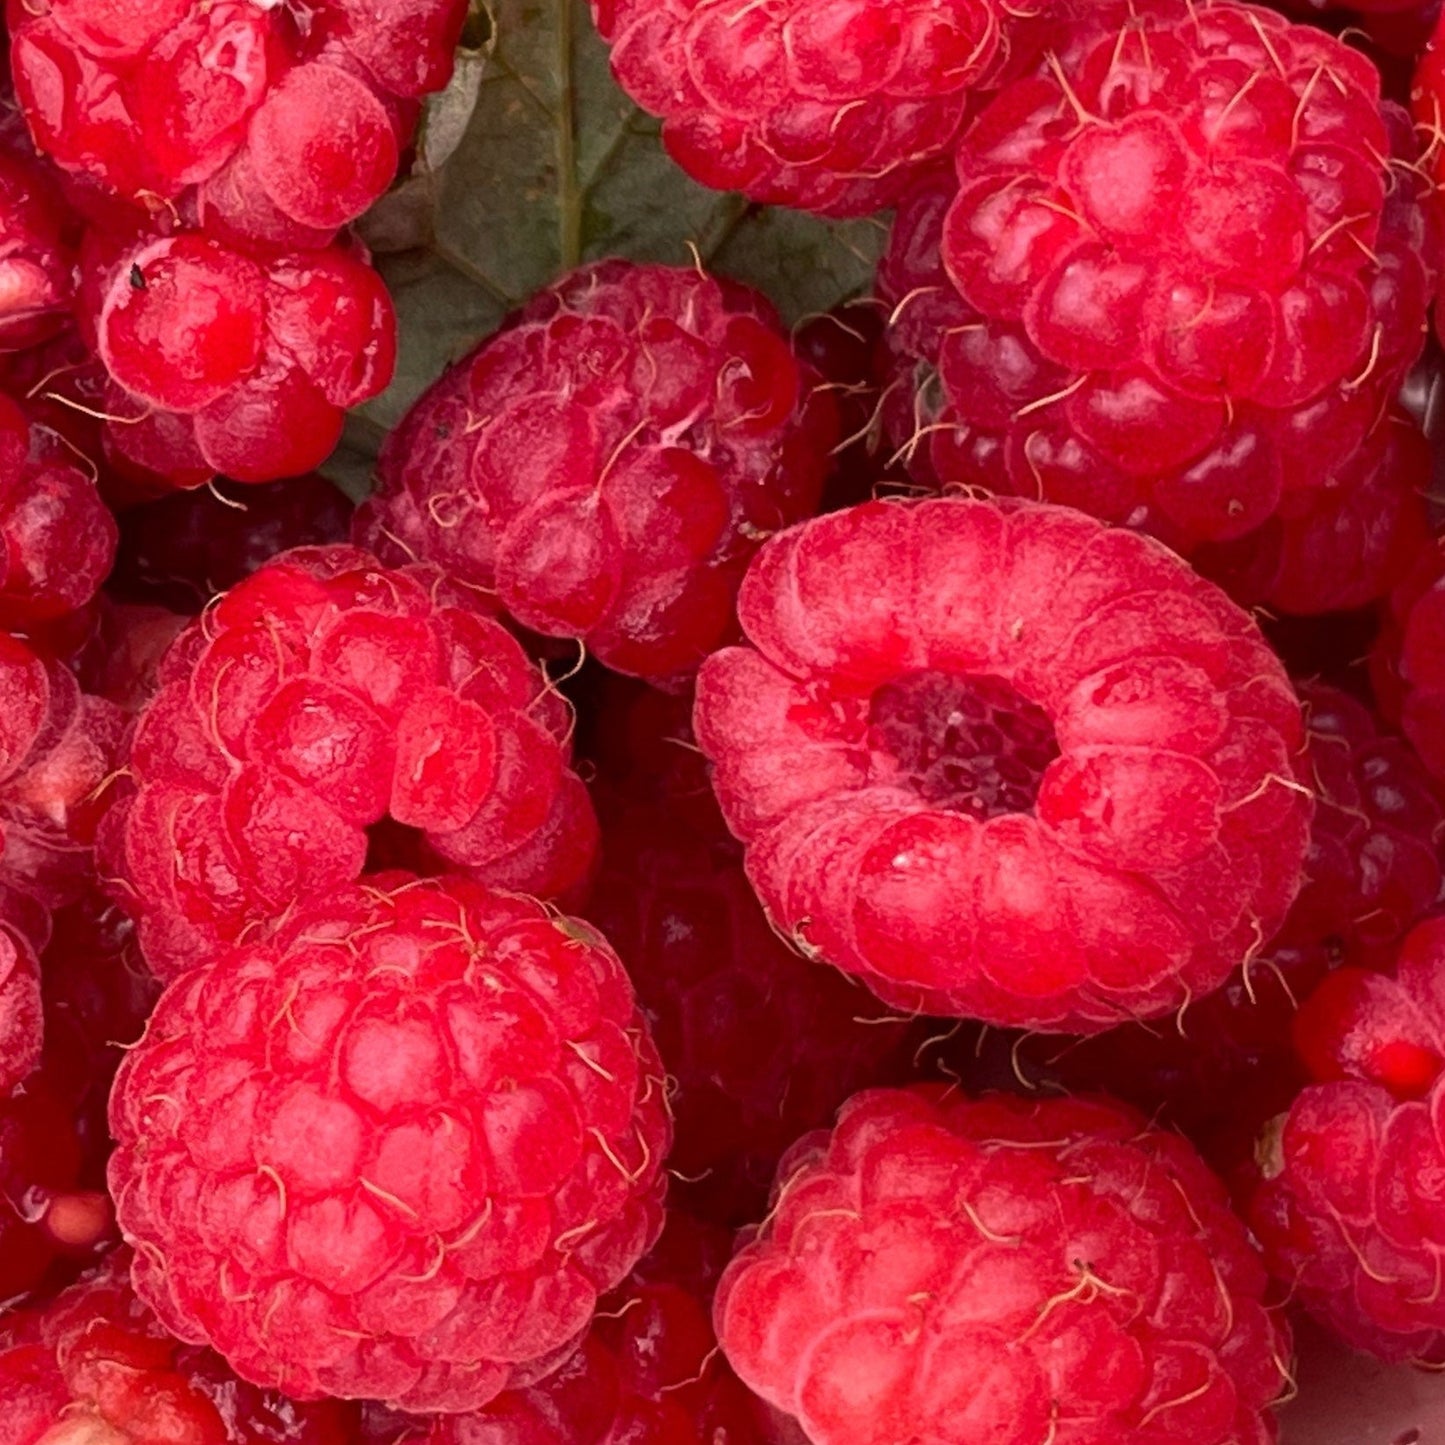 Semillas de frambuesa silvestre (Rubus idaeus) - Perenne nativa - Zona 3 - Más de 150 semillas